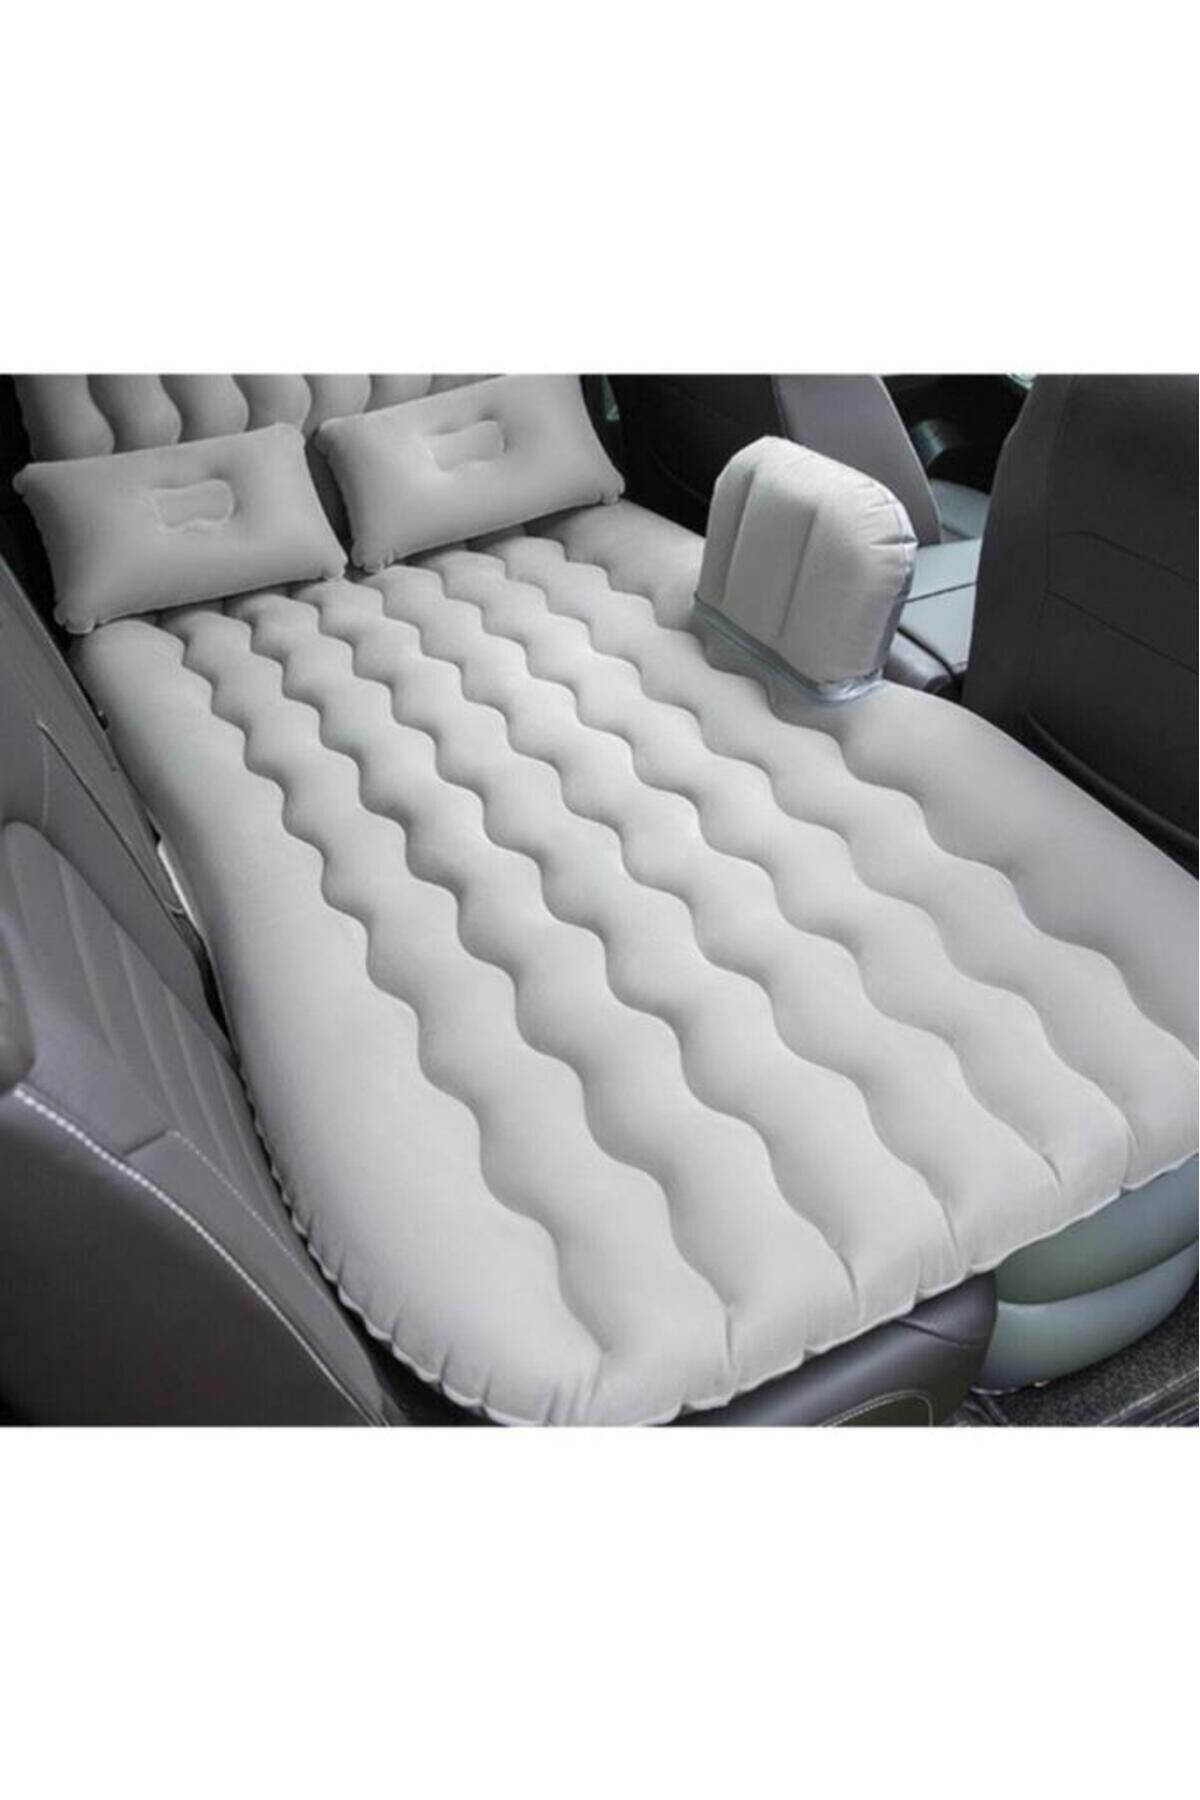 Fırsat Oyuncak Car Bed Araç Içi Şişme Yatak Araba Arka Koltuk Yatağı + Şişirme Pompası